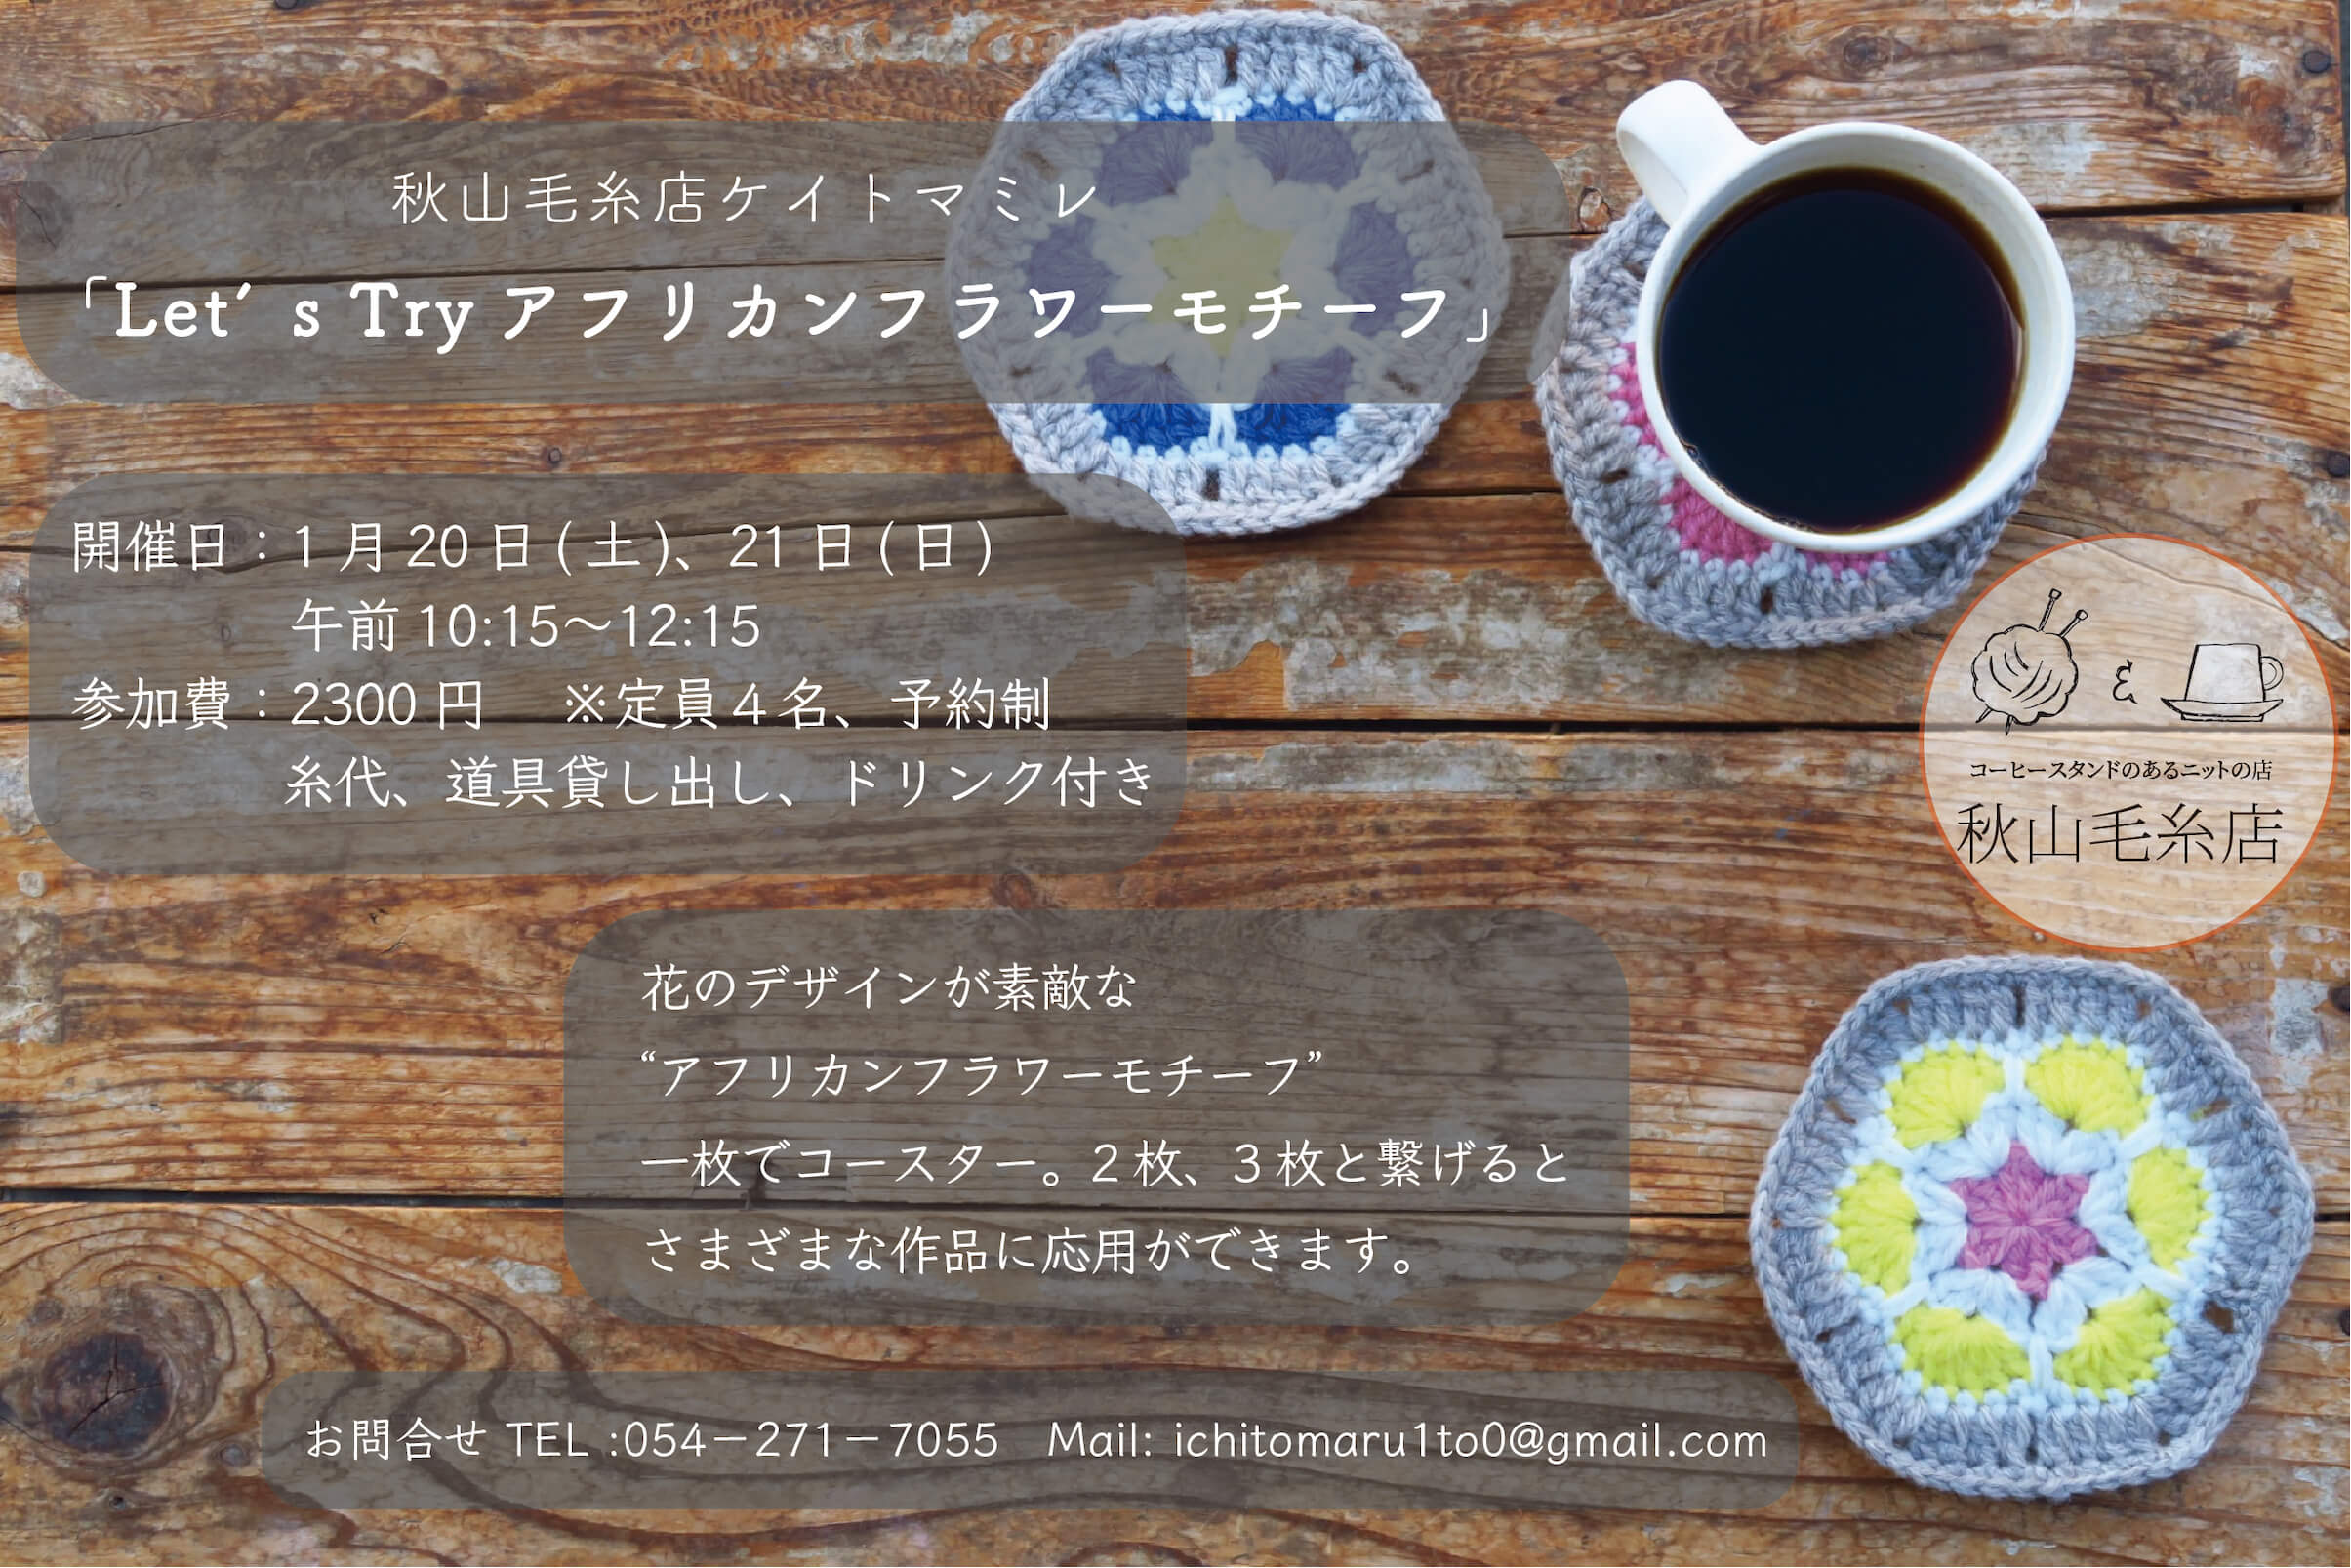 【WS終了】秋山毛糸店1月のケイトマミレ「let’s try アフリカンフラワーモチーフ」